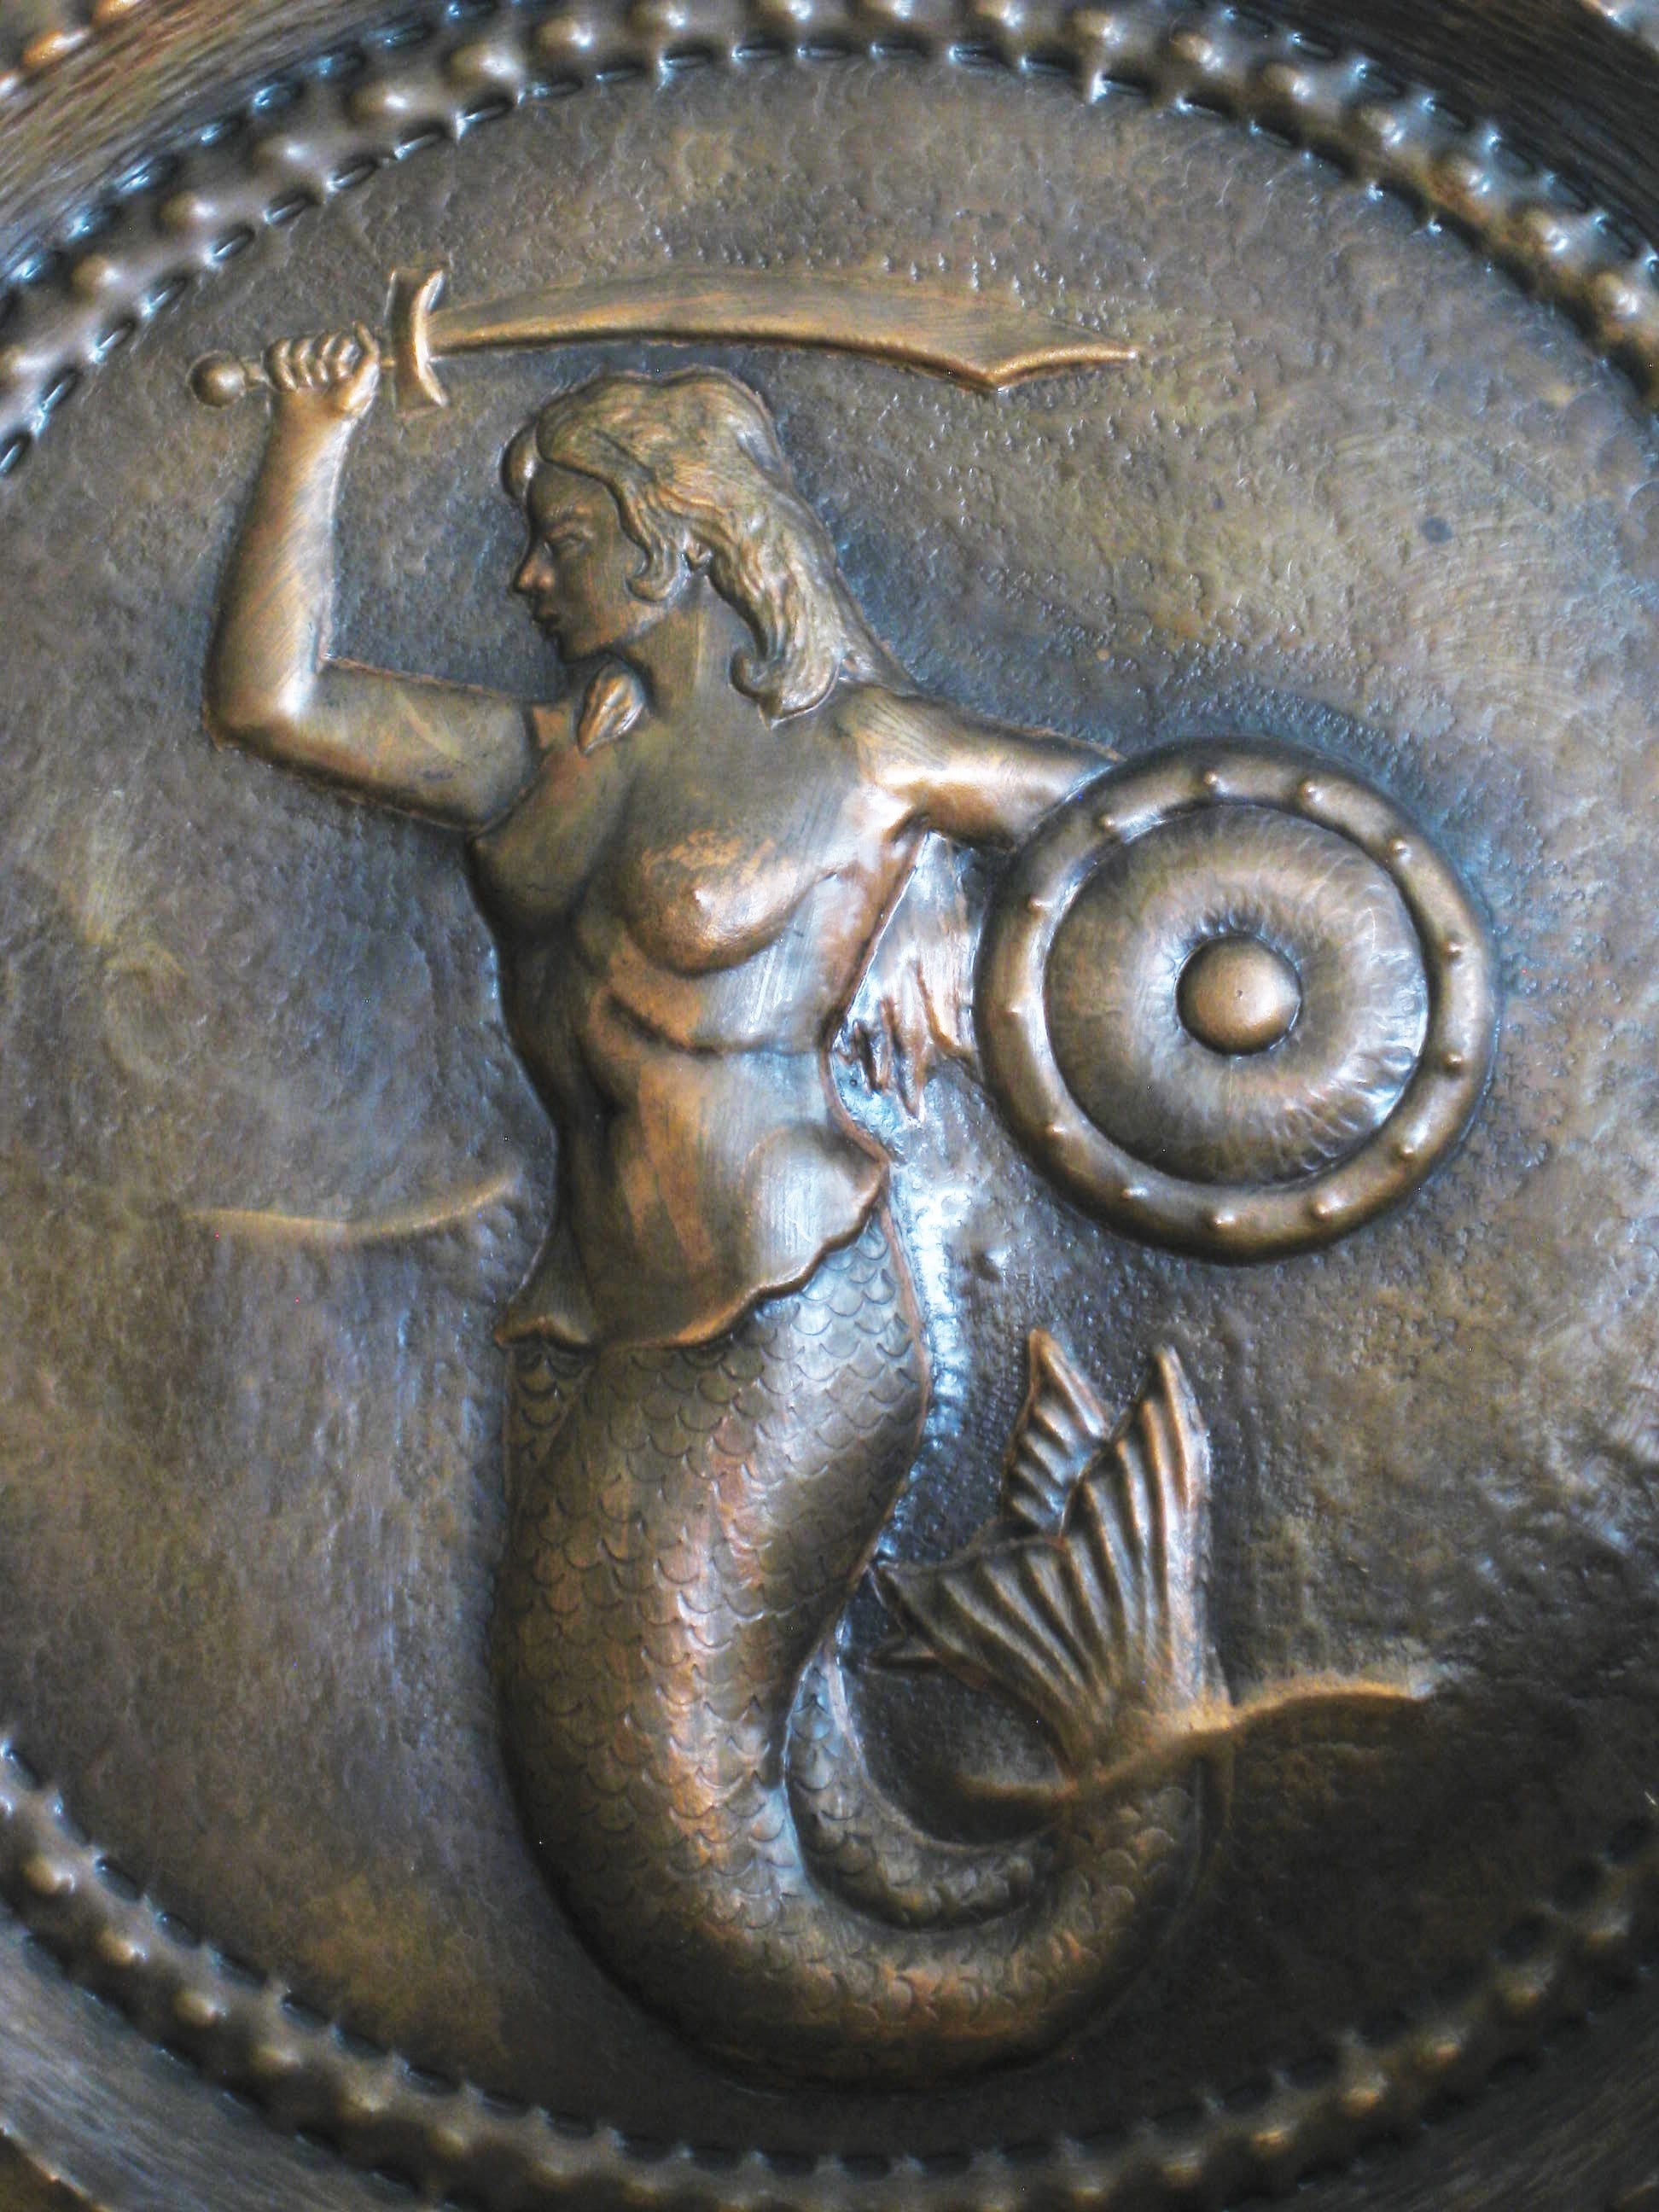 Vintage Copper plates - Greek Mythology Copper Plate